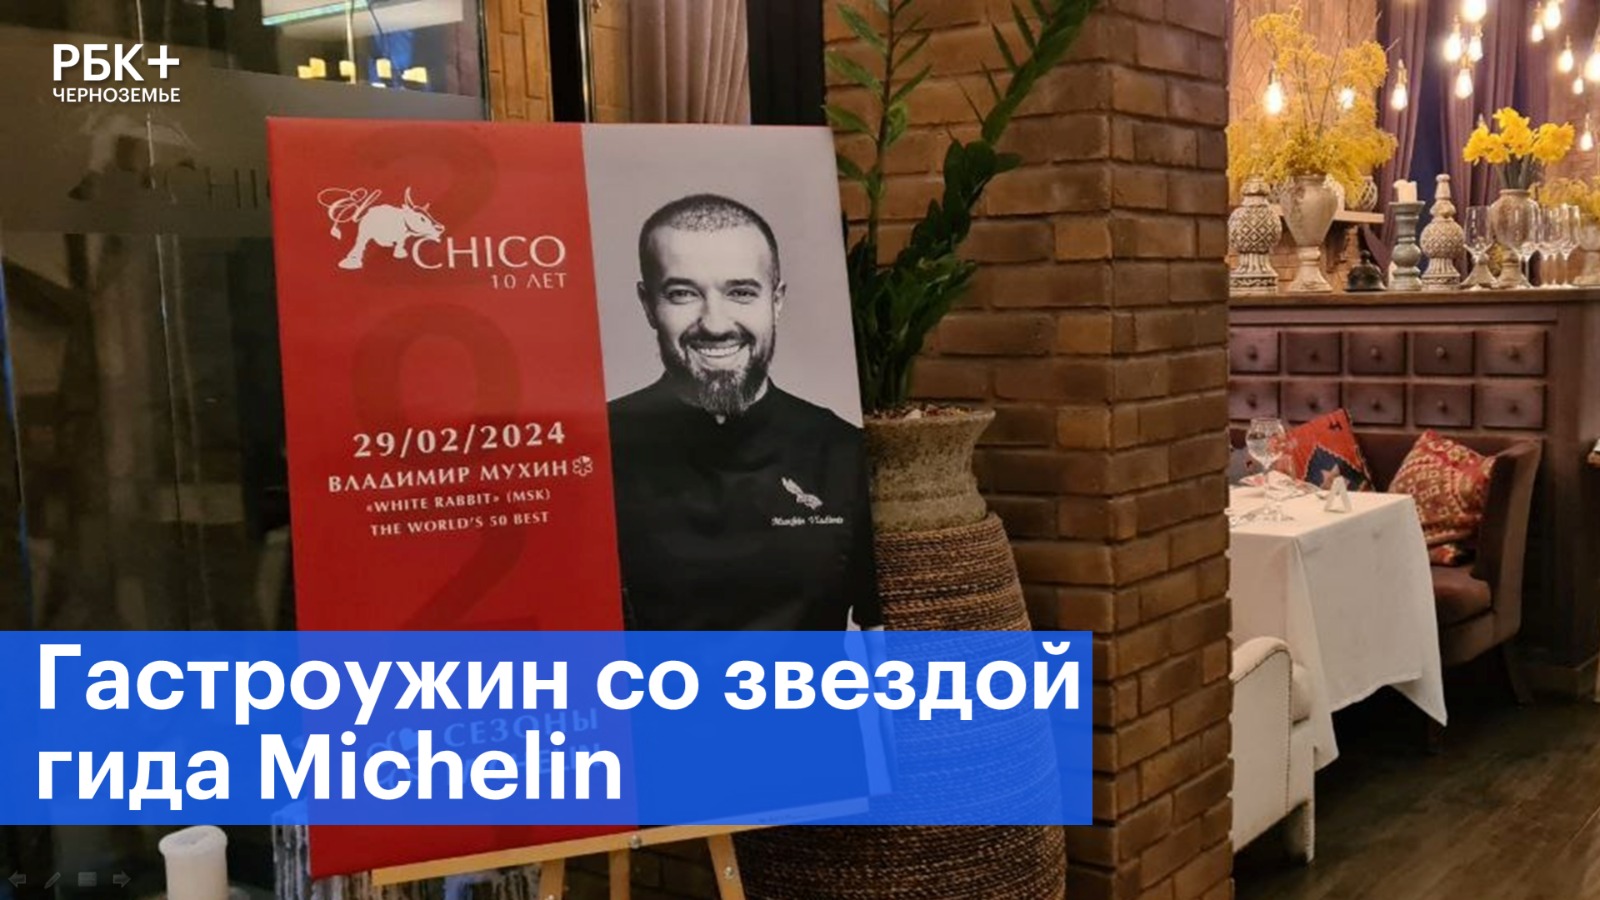 В Воронеже продолжается серия гастроужинов со звездами гида Michelin